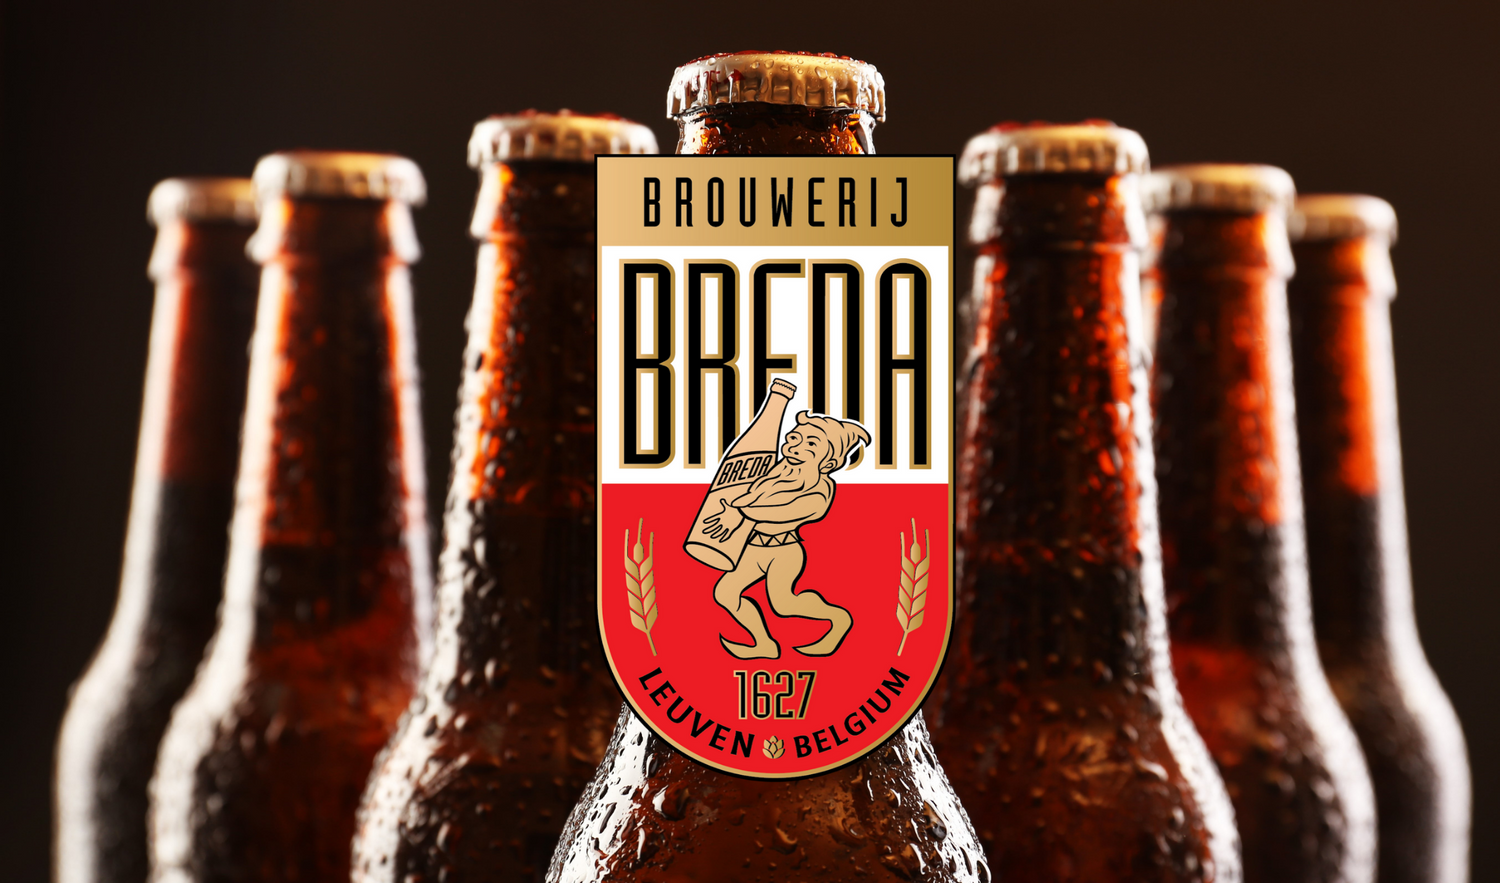 Leuvense artisanale 'Brouwerij Breda' wint maar liefst 2 bronzen country awards tijdens de 'World Beer Awards' editie 2020